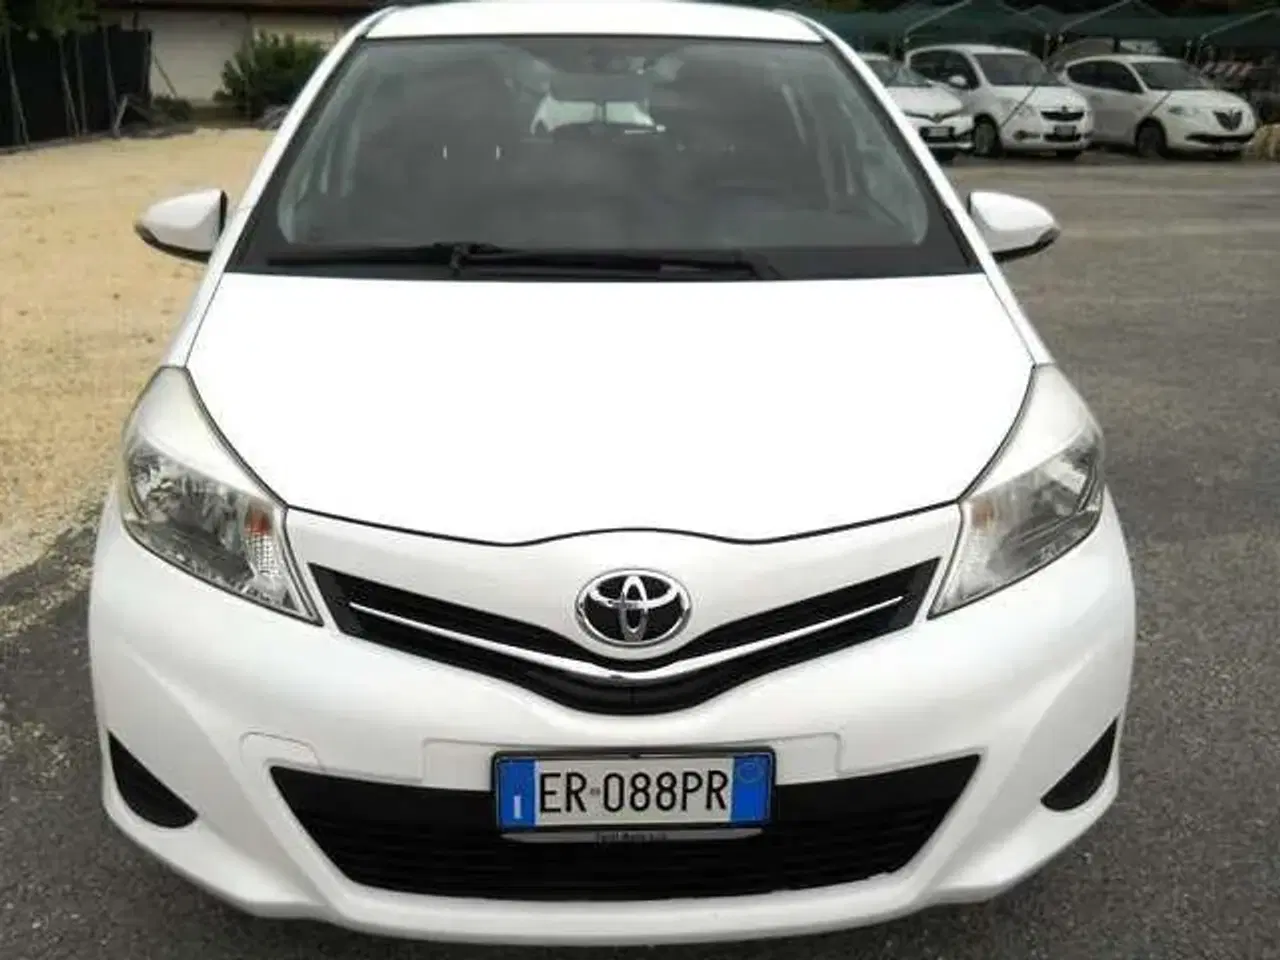 Billede 1 - Toyota Yaris fra 2013 sælges som reservedele.